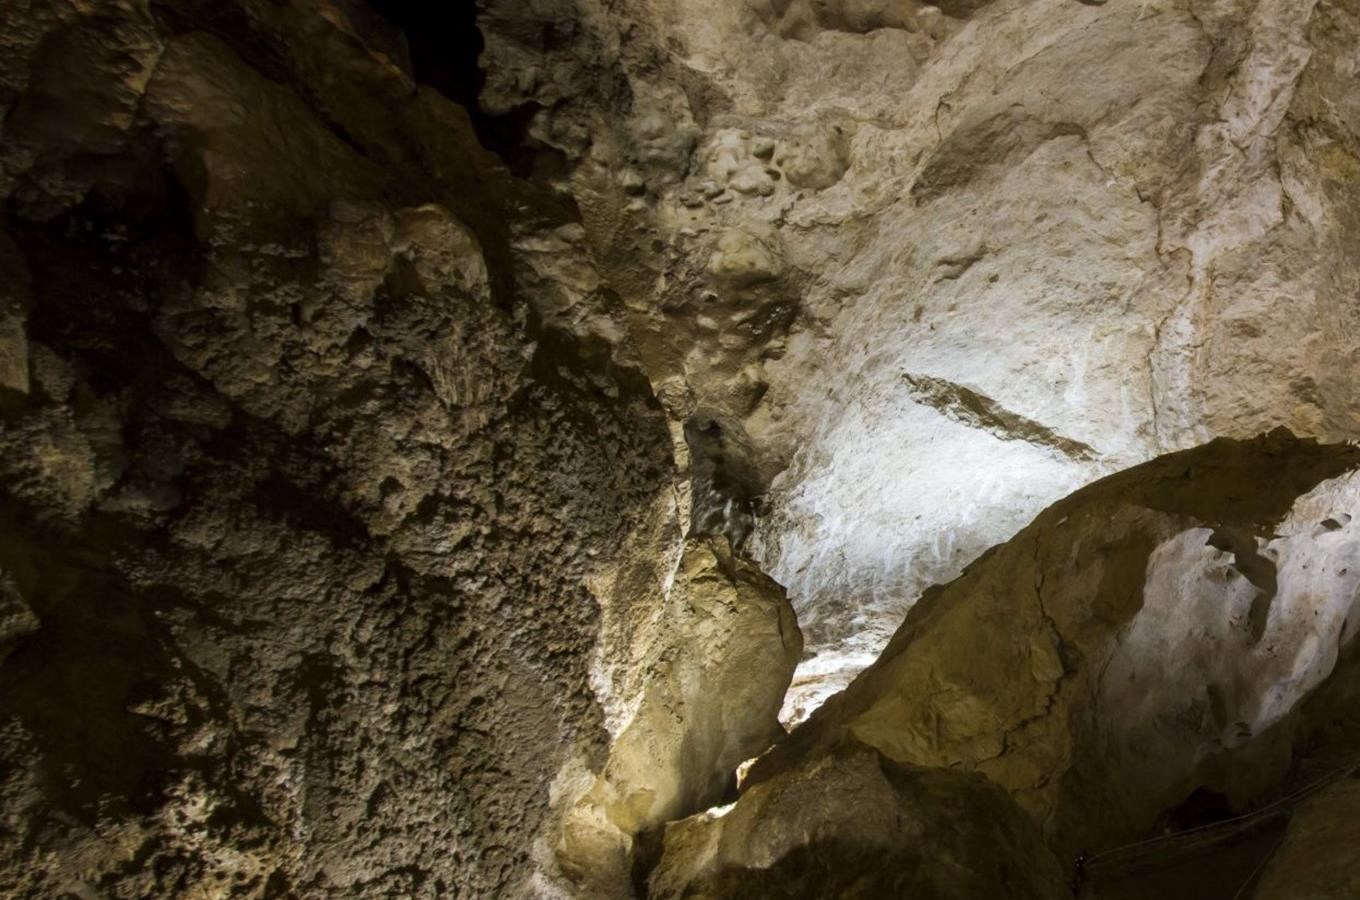 Kristova jeskyně v Klokočských skalách